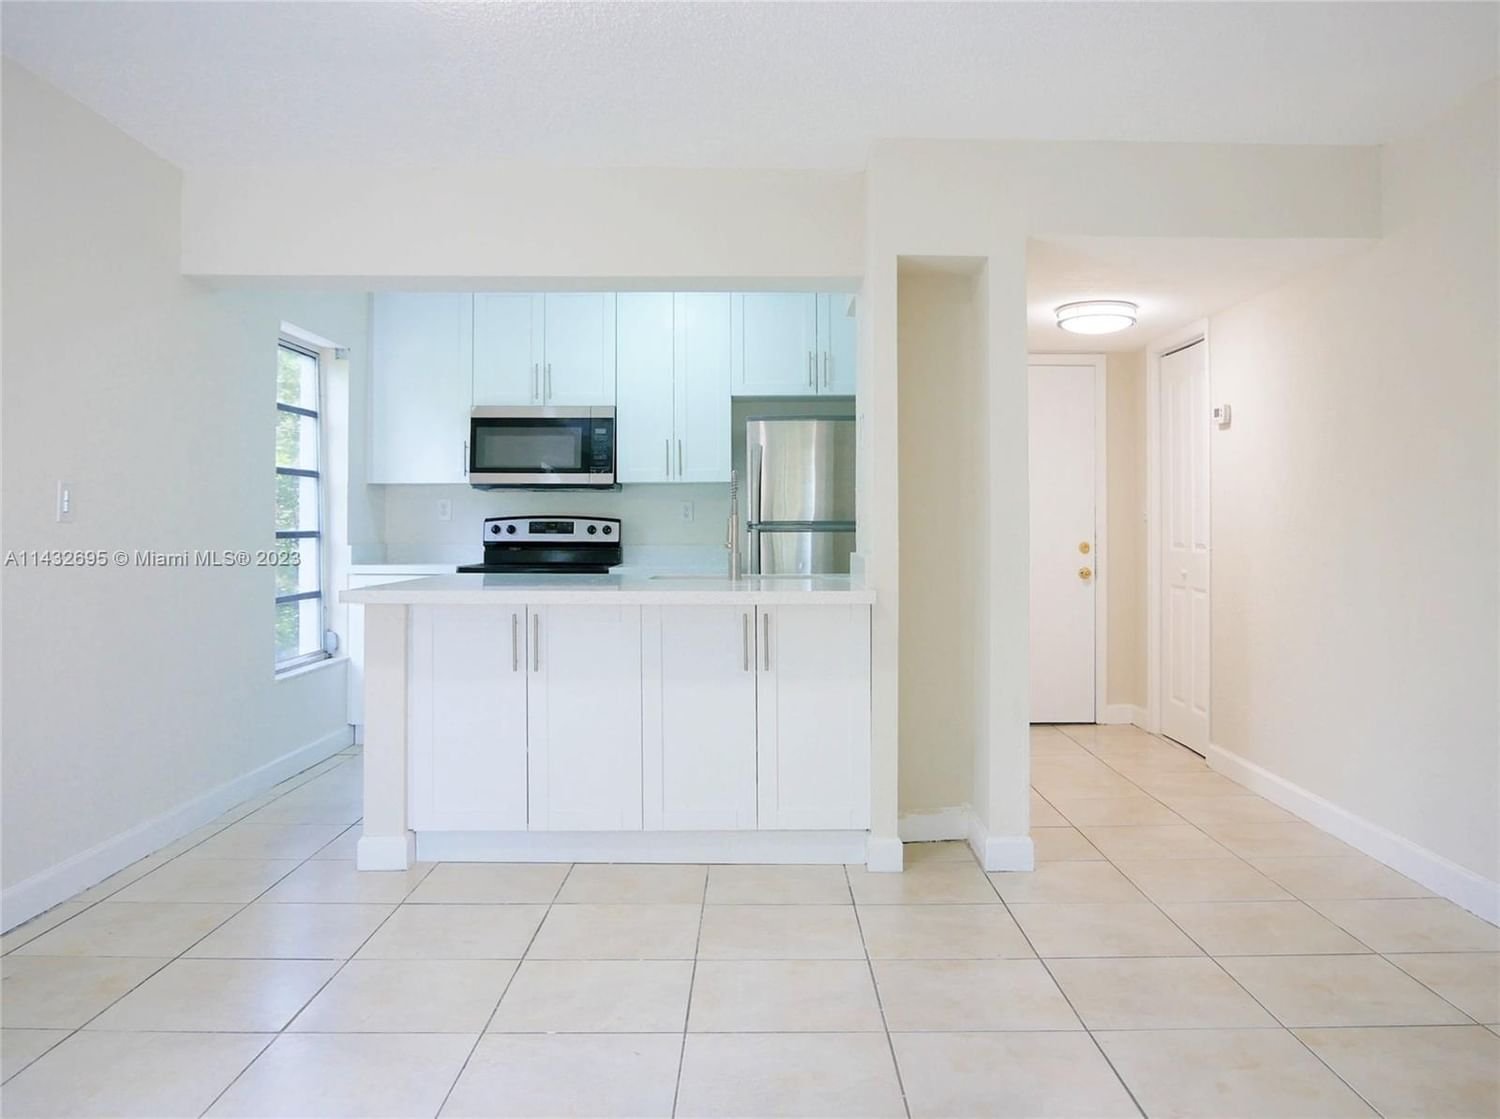 Real estate property located at 4550 16th Ave #301, Miami-Dade County, CASA BELLA CONDO, Hialeah, FL